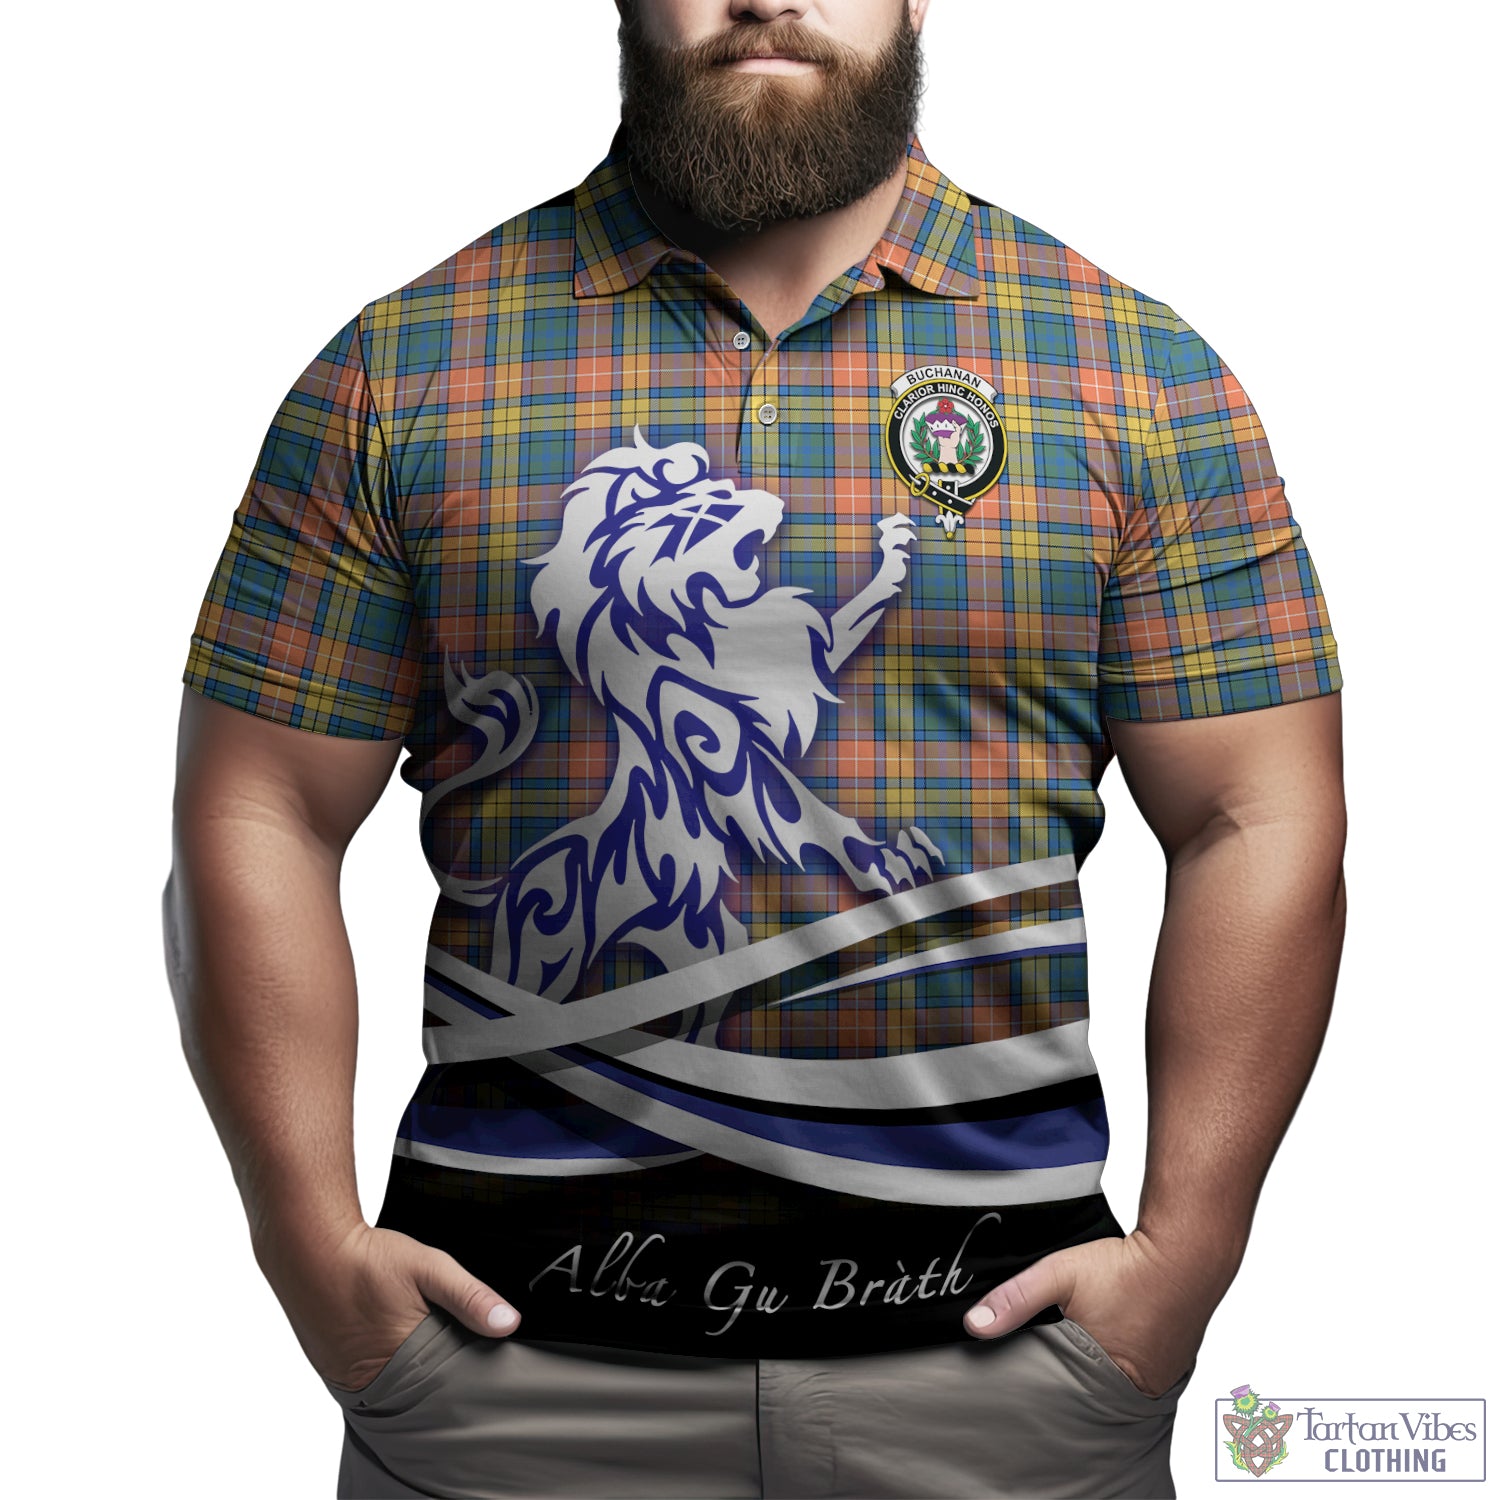 buchanan-ancient-tartan-polo-shirt-with-alba-gu-brath-regal-lion-emblem